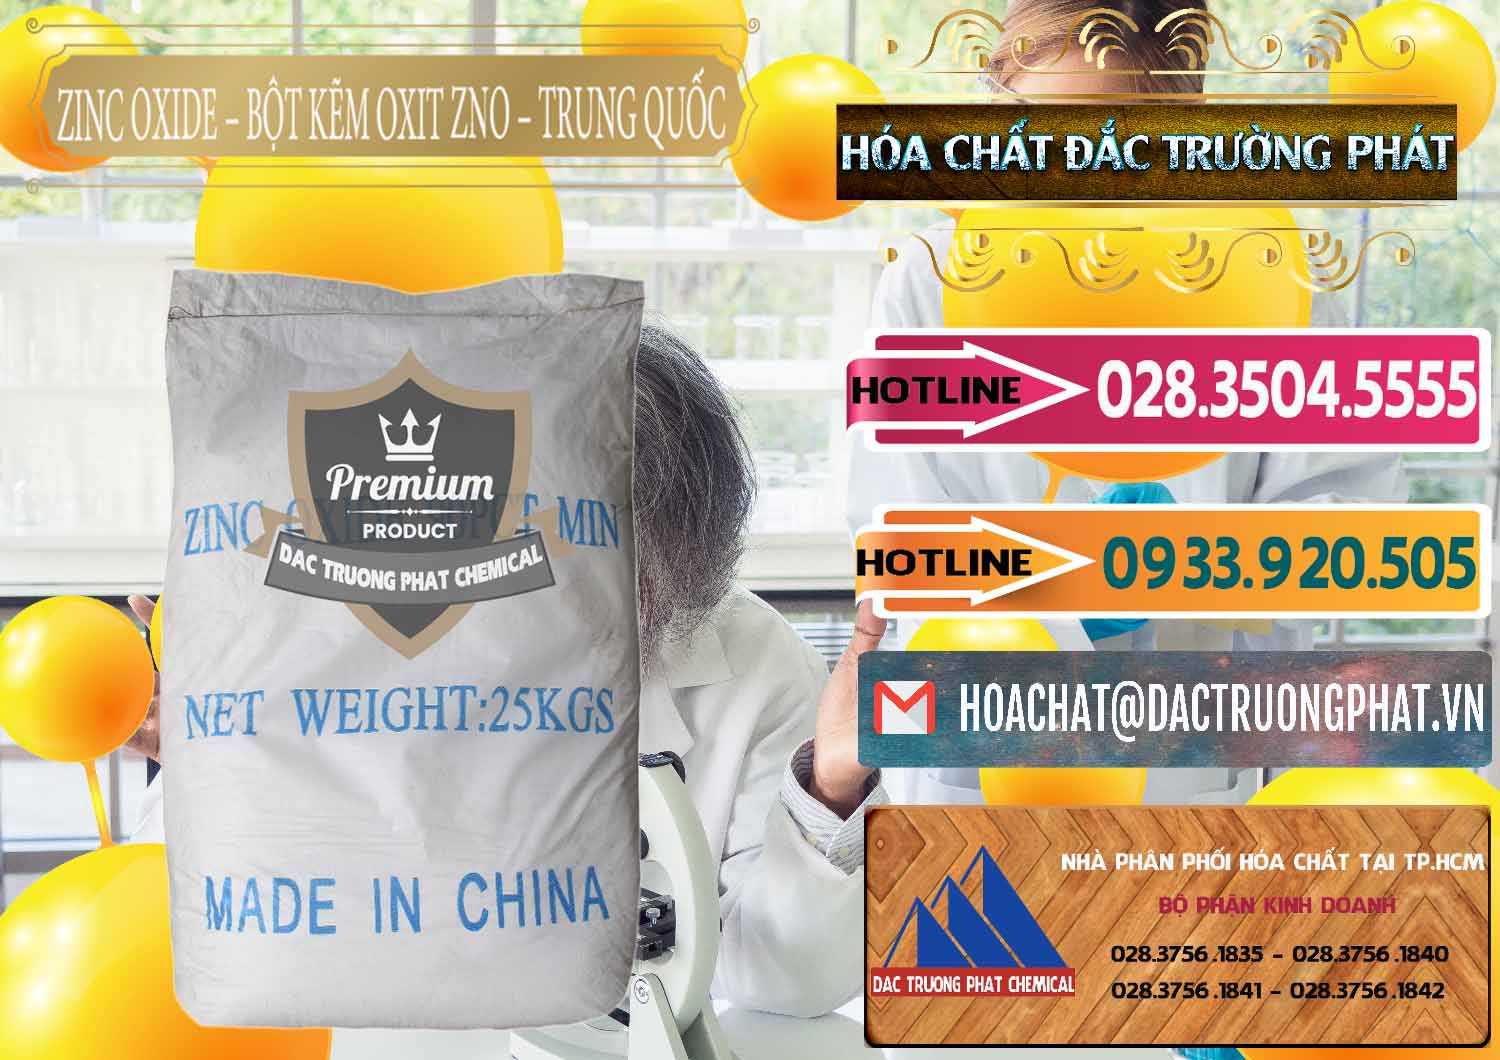 Nơi chuyên bán & cung cấp Zinc Oxide - Bột Kẽm Oxit ZNO Trung Quốc China - 0182 - Đơn vị chuyên bán - cung cấp hóa chất tại TP.HCM - dactruongphat.vn